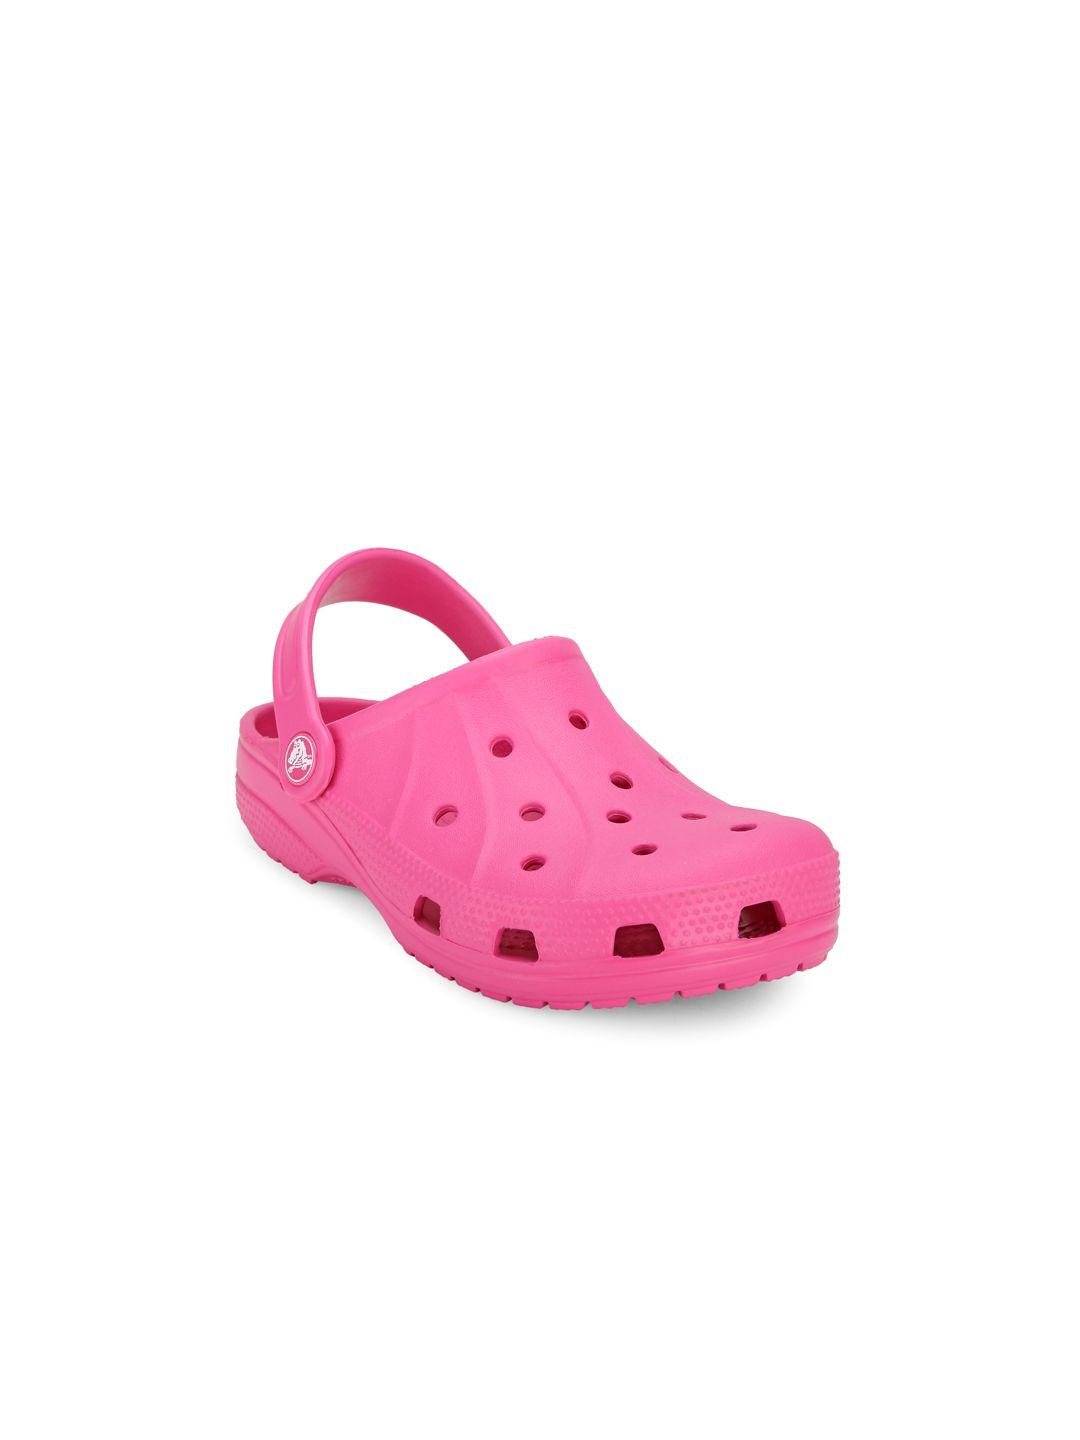 crocs ralen  girls pink clogs